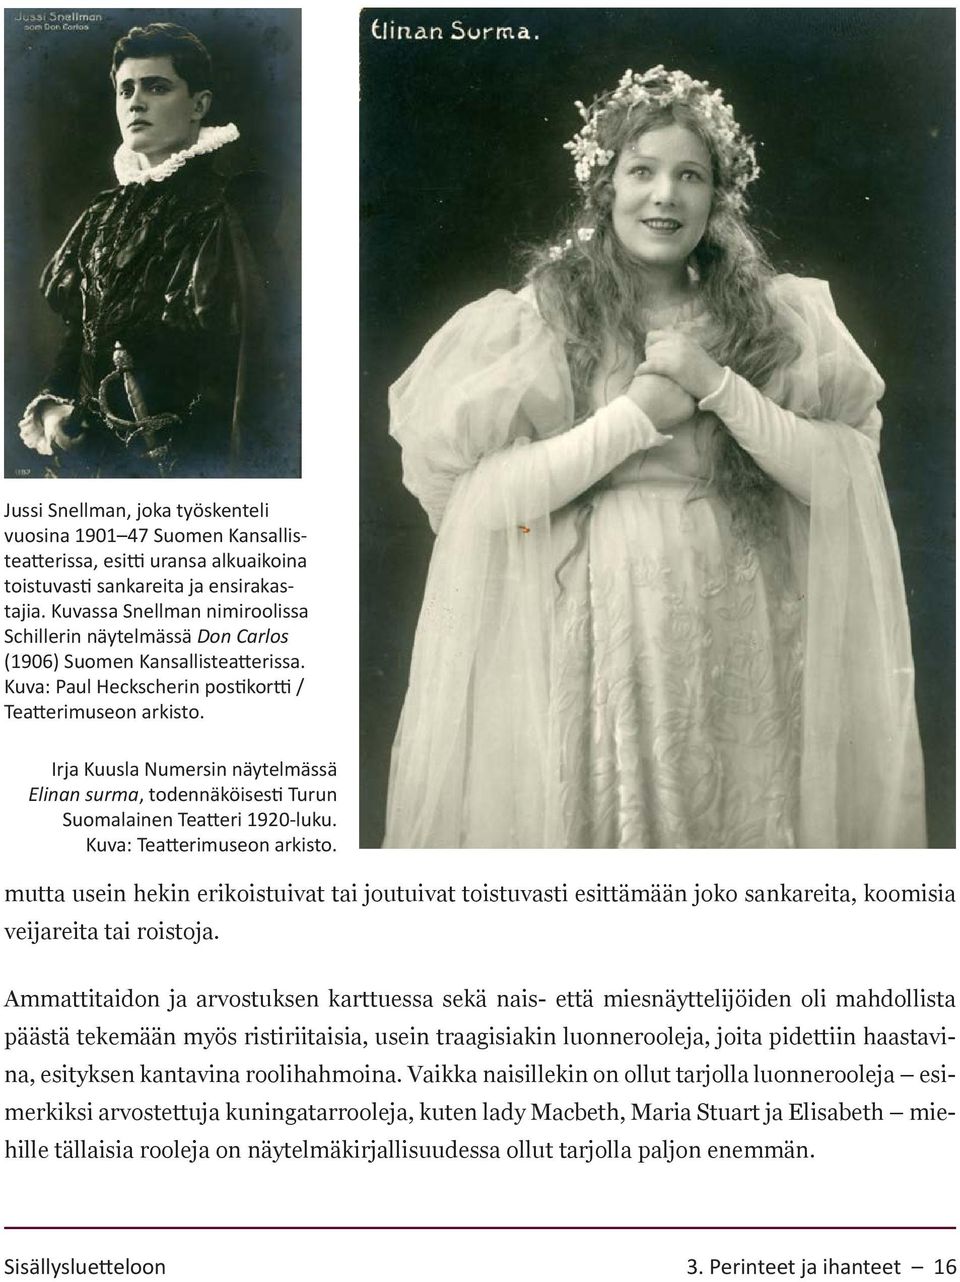 Irja Kuusla Numersin näytelmässä Elinan surma, todennäköisesti Turun Suomalainen Teatteri 1920-luku. Kuva: Teatterimuseon arkisto.